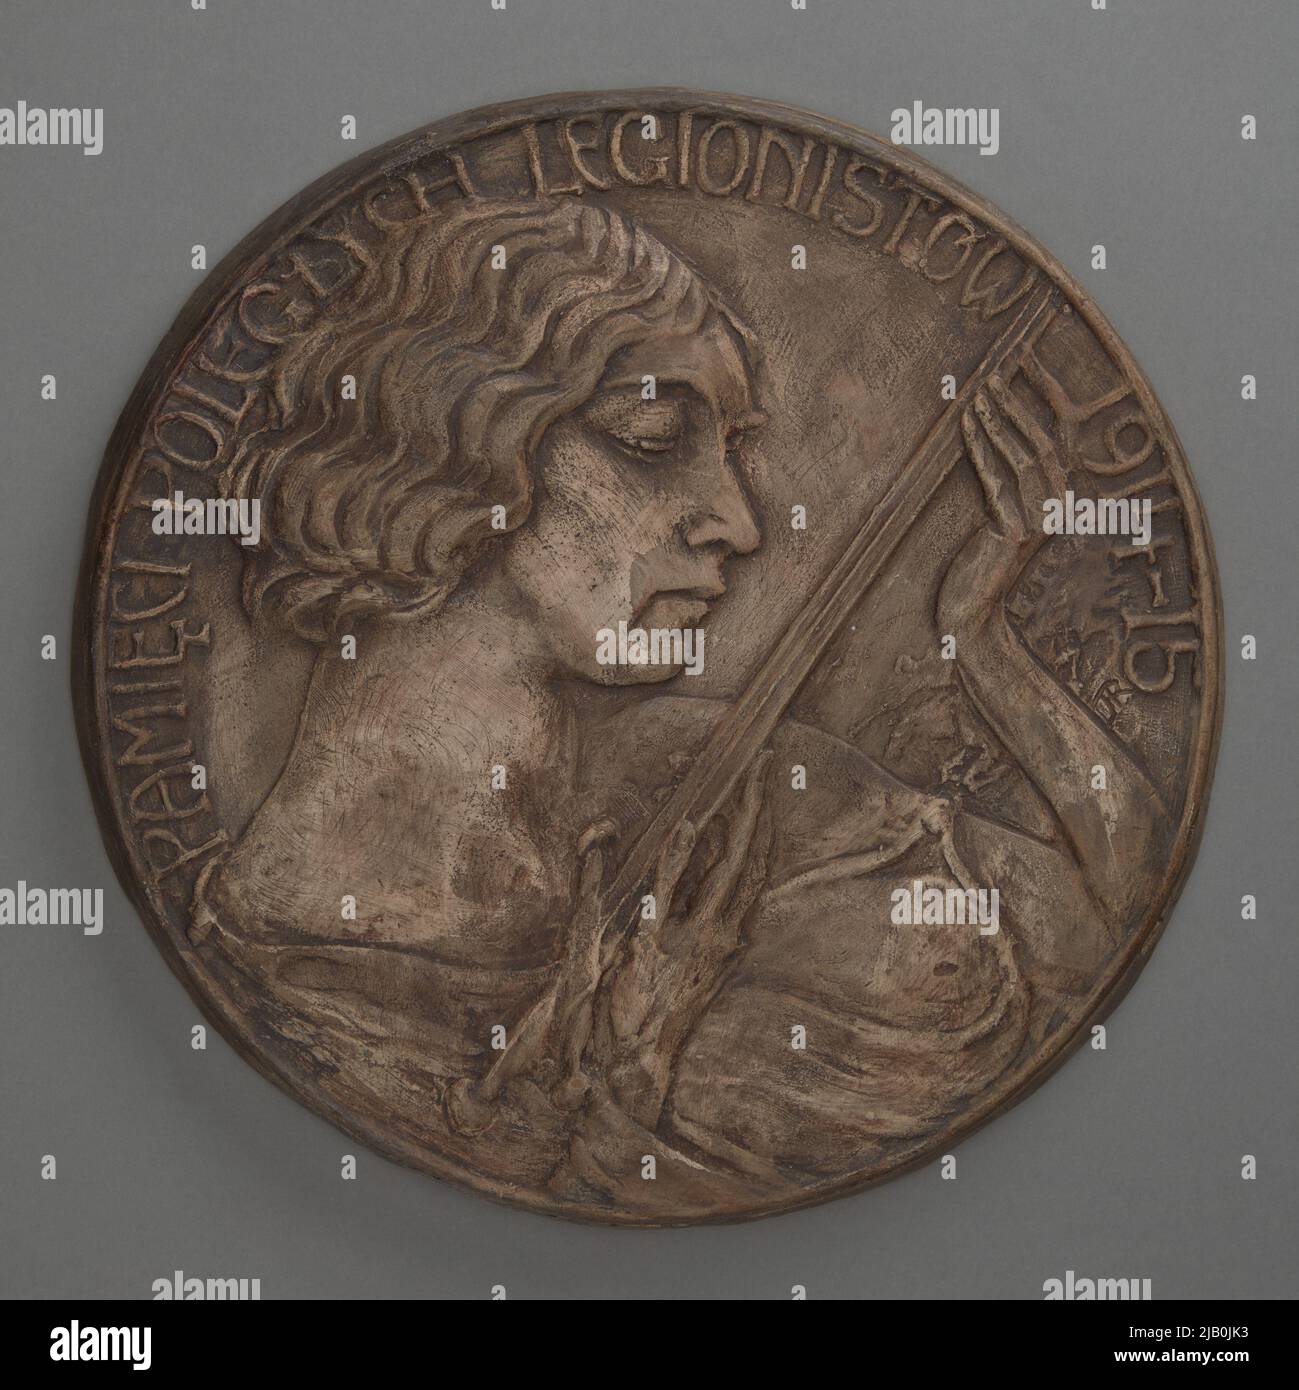 EN MEMORIA DE LOS LEGIONARIOS CAÍDOS 1914–15 – Proyecto de una medalla conmemorativa Raszka, Jan (1871 1945) Foto de stock